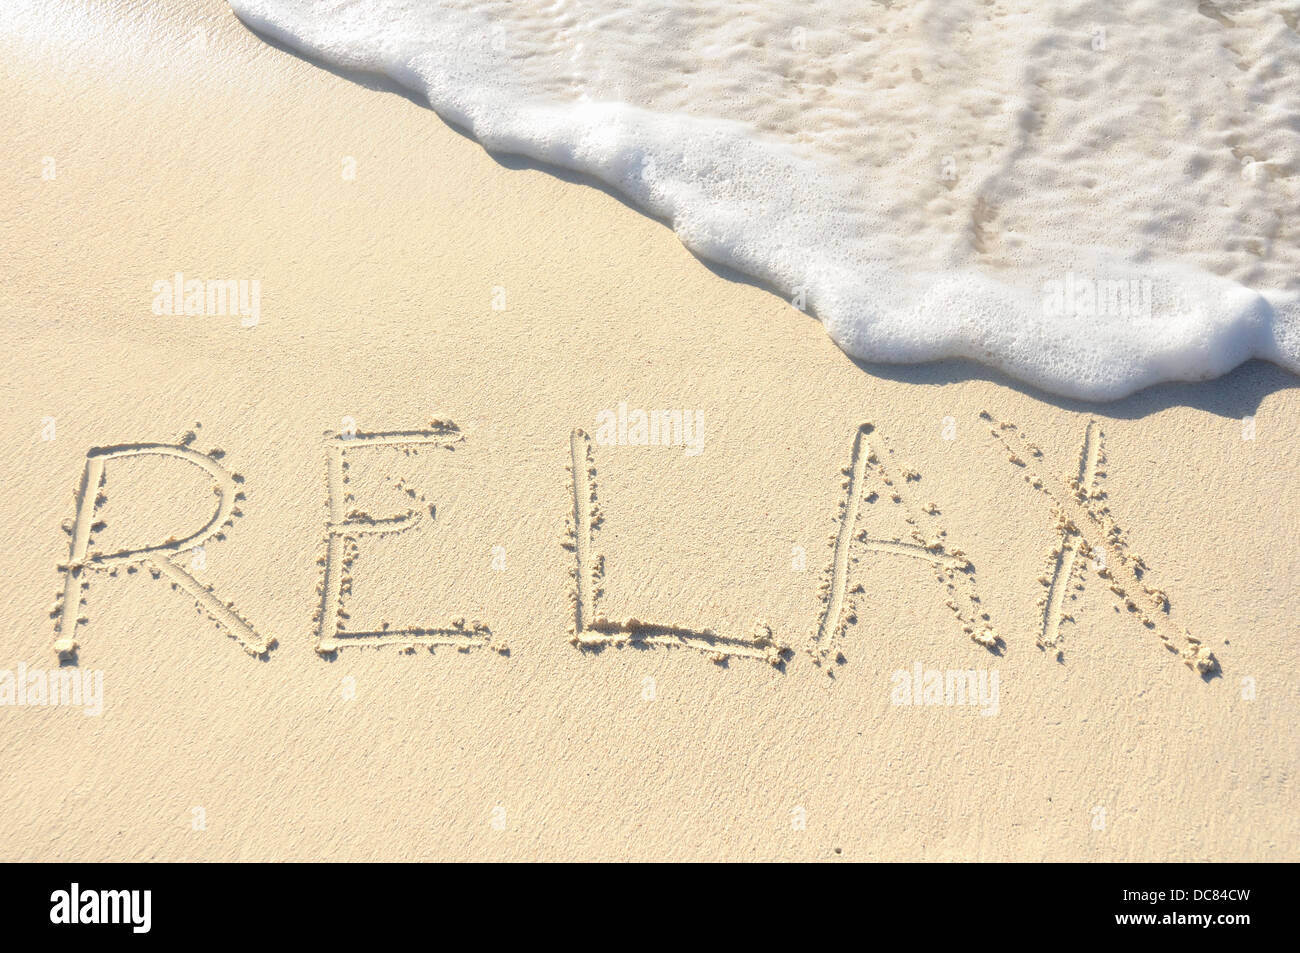 Das Wort "entspannen" in den Sand am Strand geschrieben Stockfoto